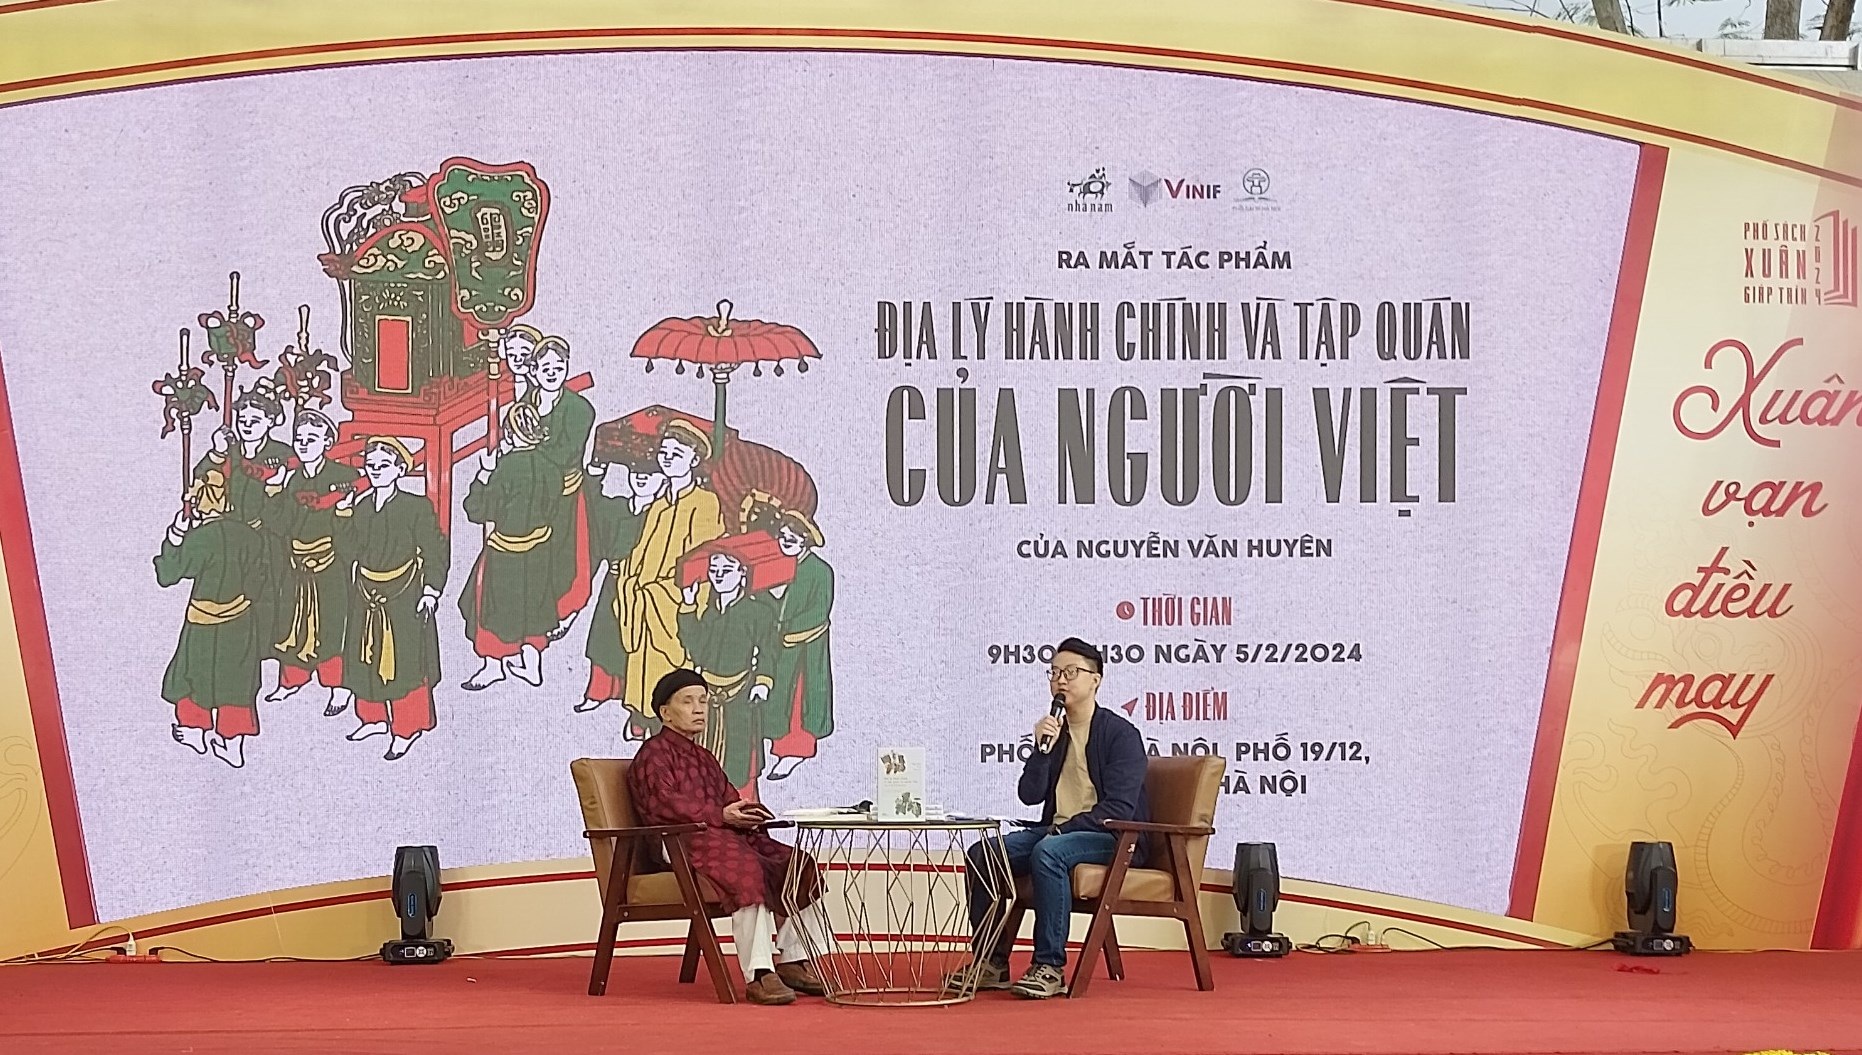 “Địa lý hành chính và tập quán người Việt”: Gắn bó trong mâu thuẫn - 1